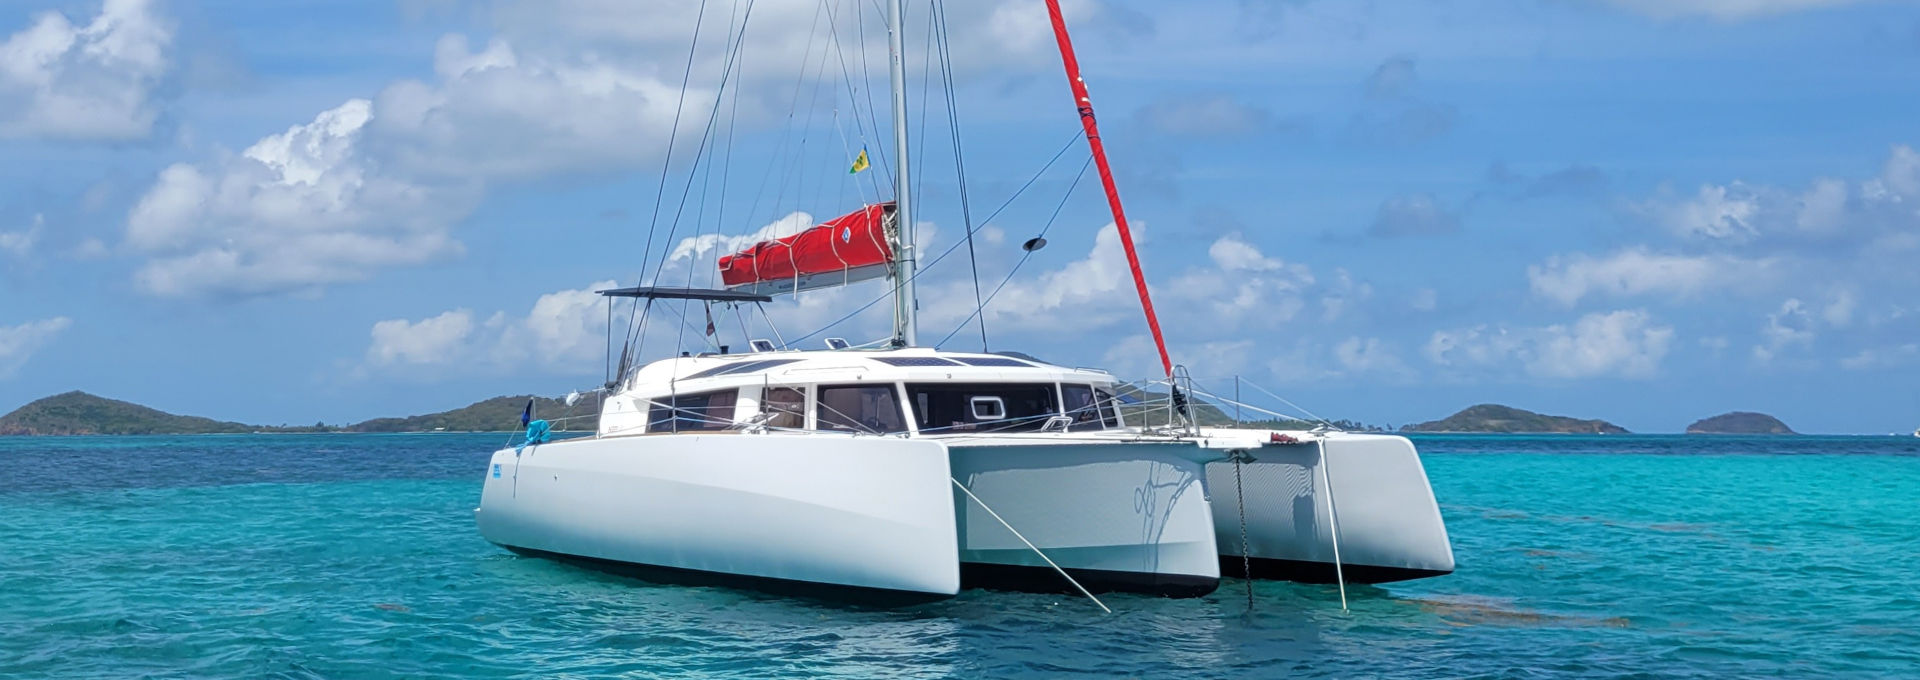 Alneelam, NEEL 43 de A&C Yacht Charter au mouillage aux Grenadines